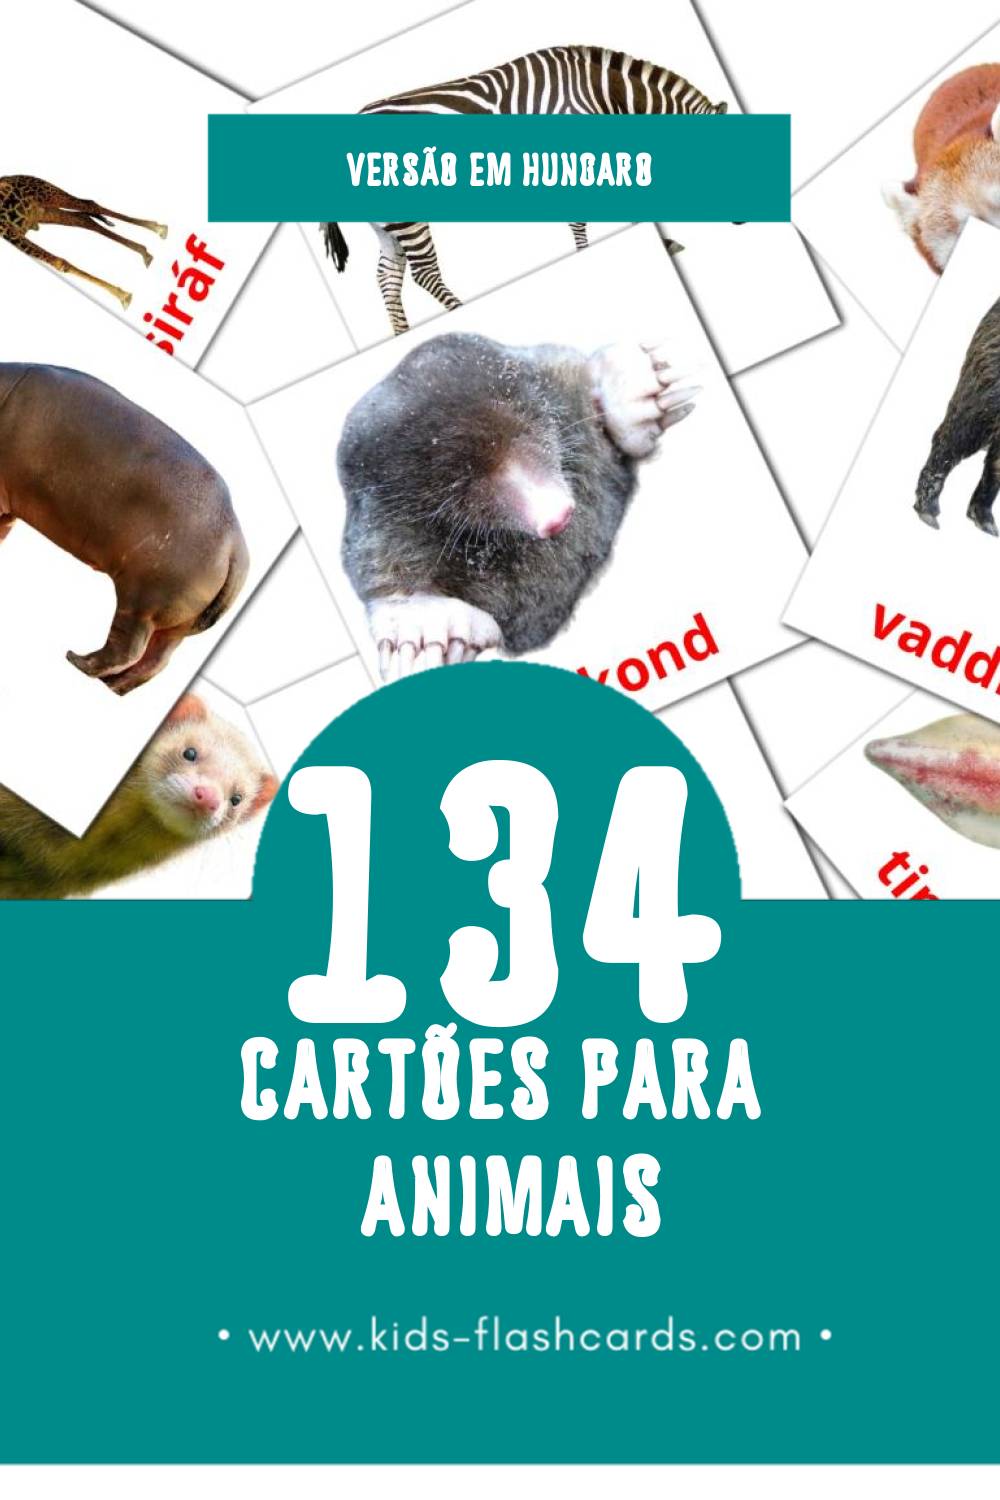 Flashcards de Állatok Visuais para Toddlers (134 cartões em Hungaro)